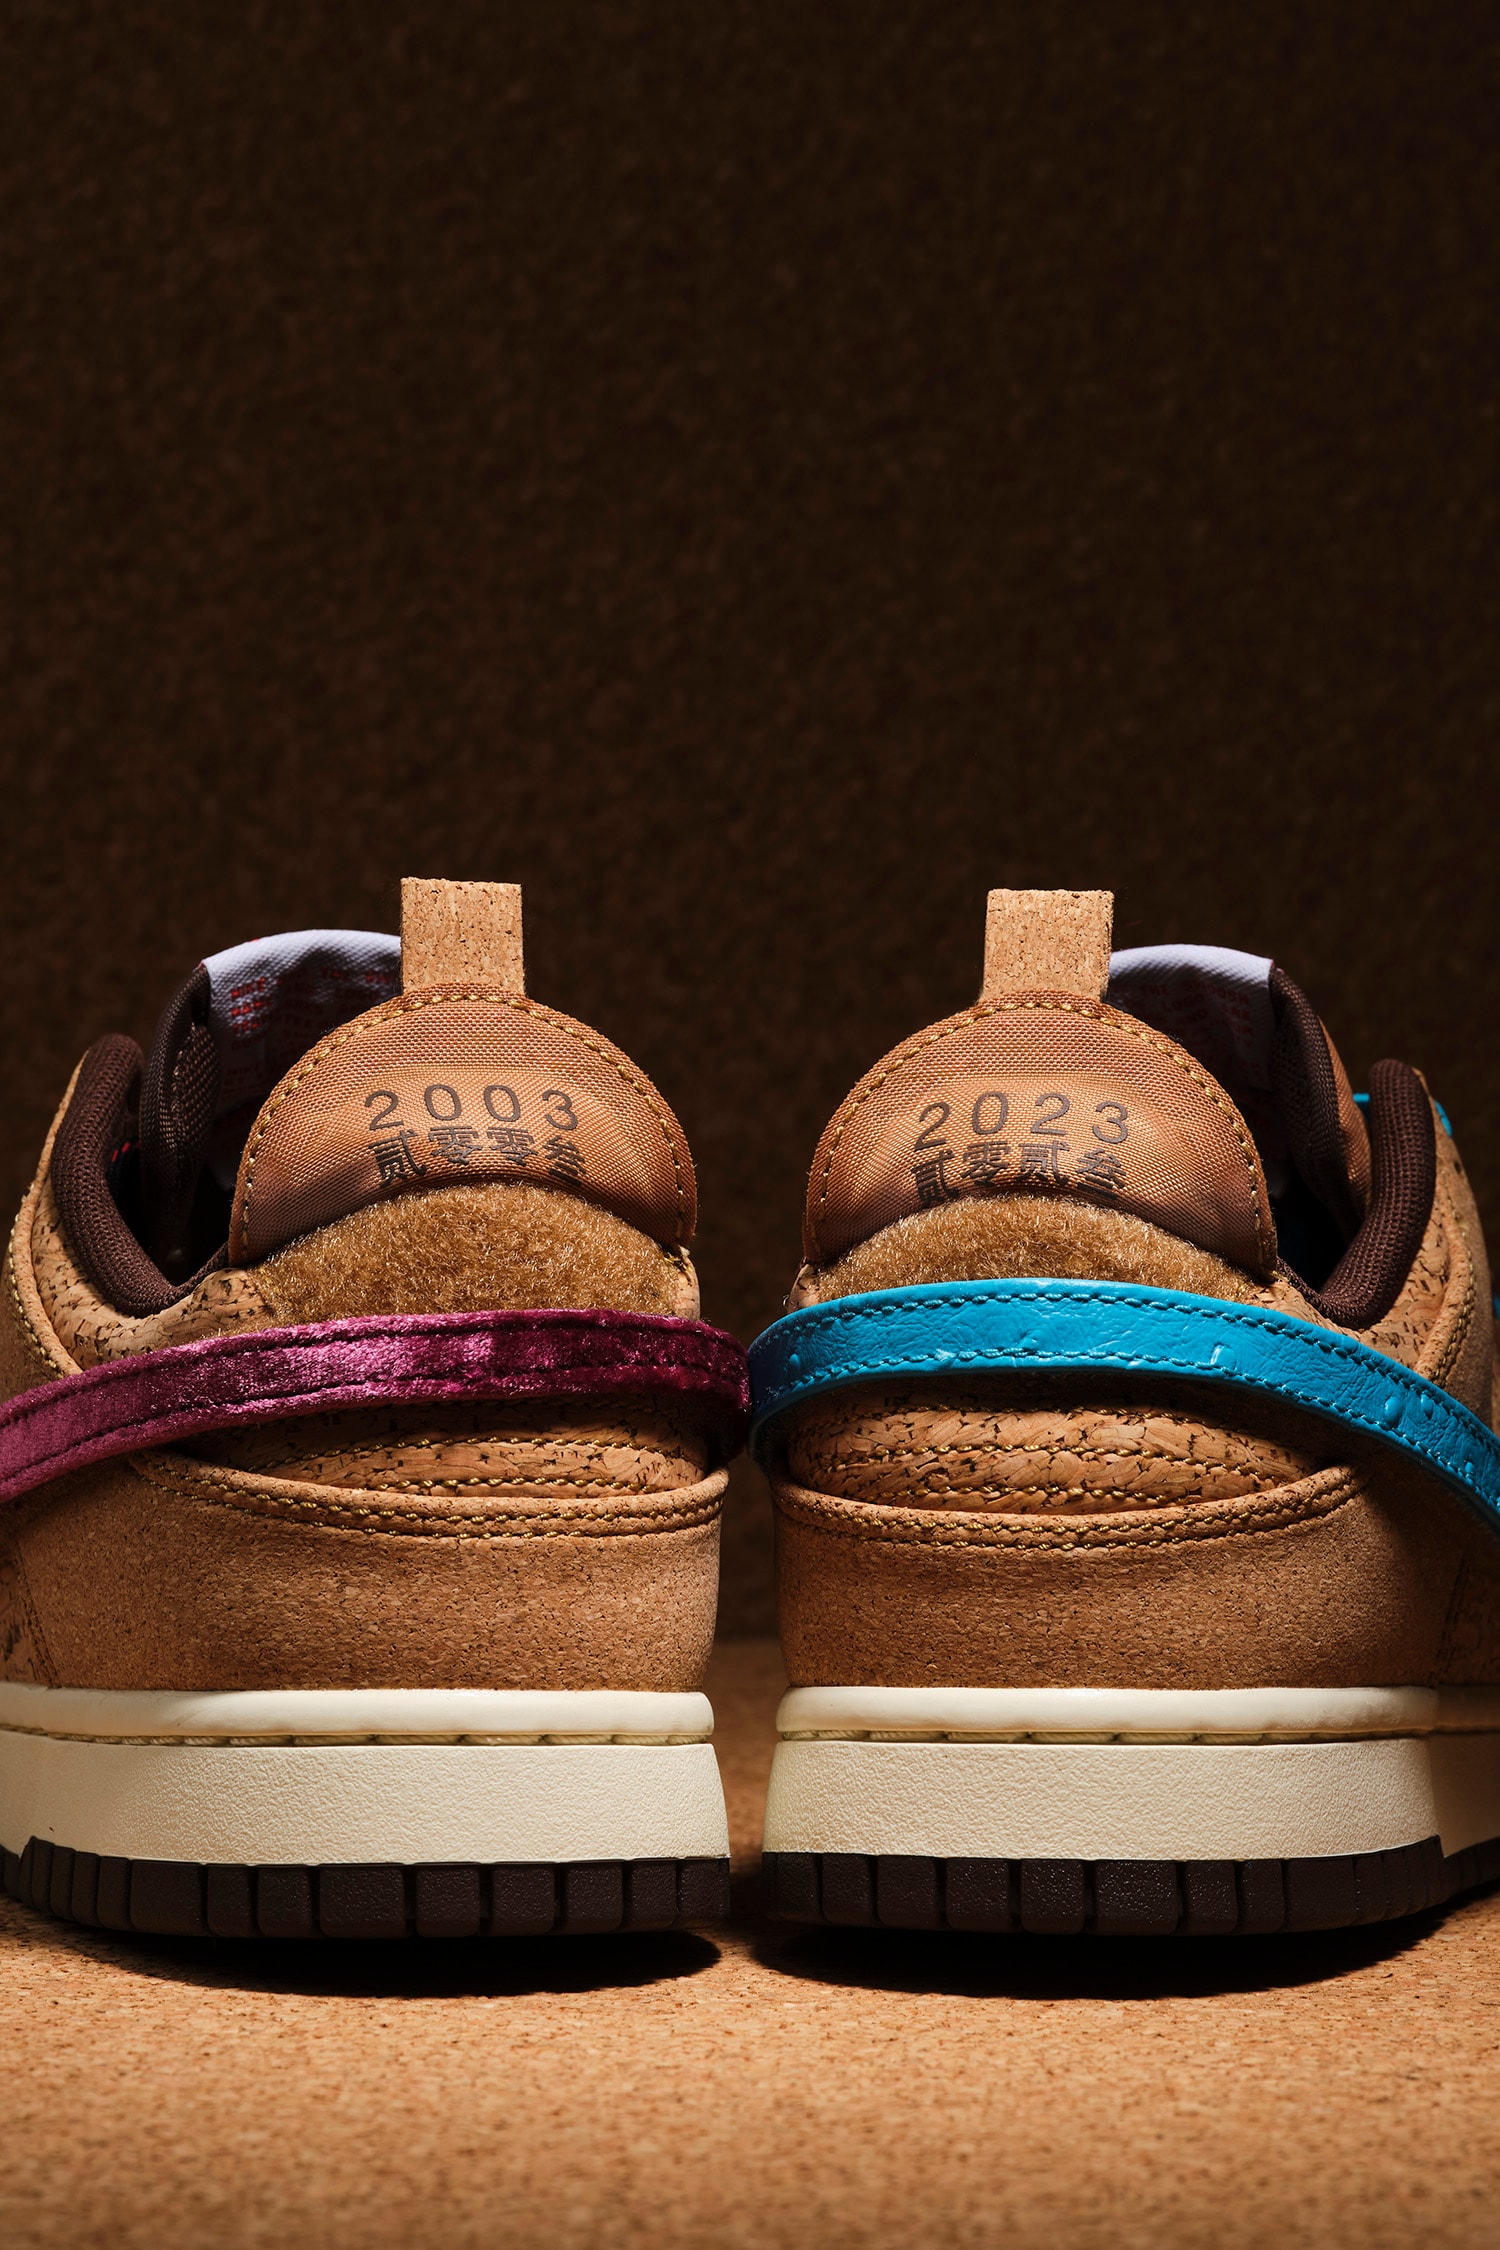 CLOT x Nike Cork Dunk 最新聯名鞋款正式登場